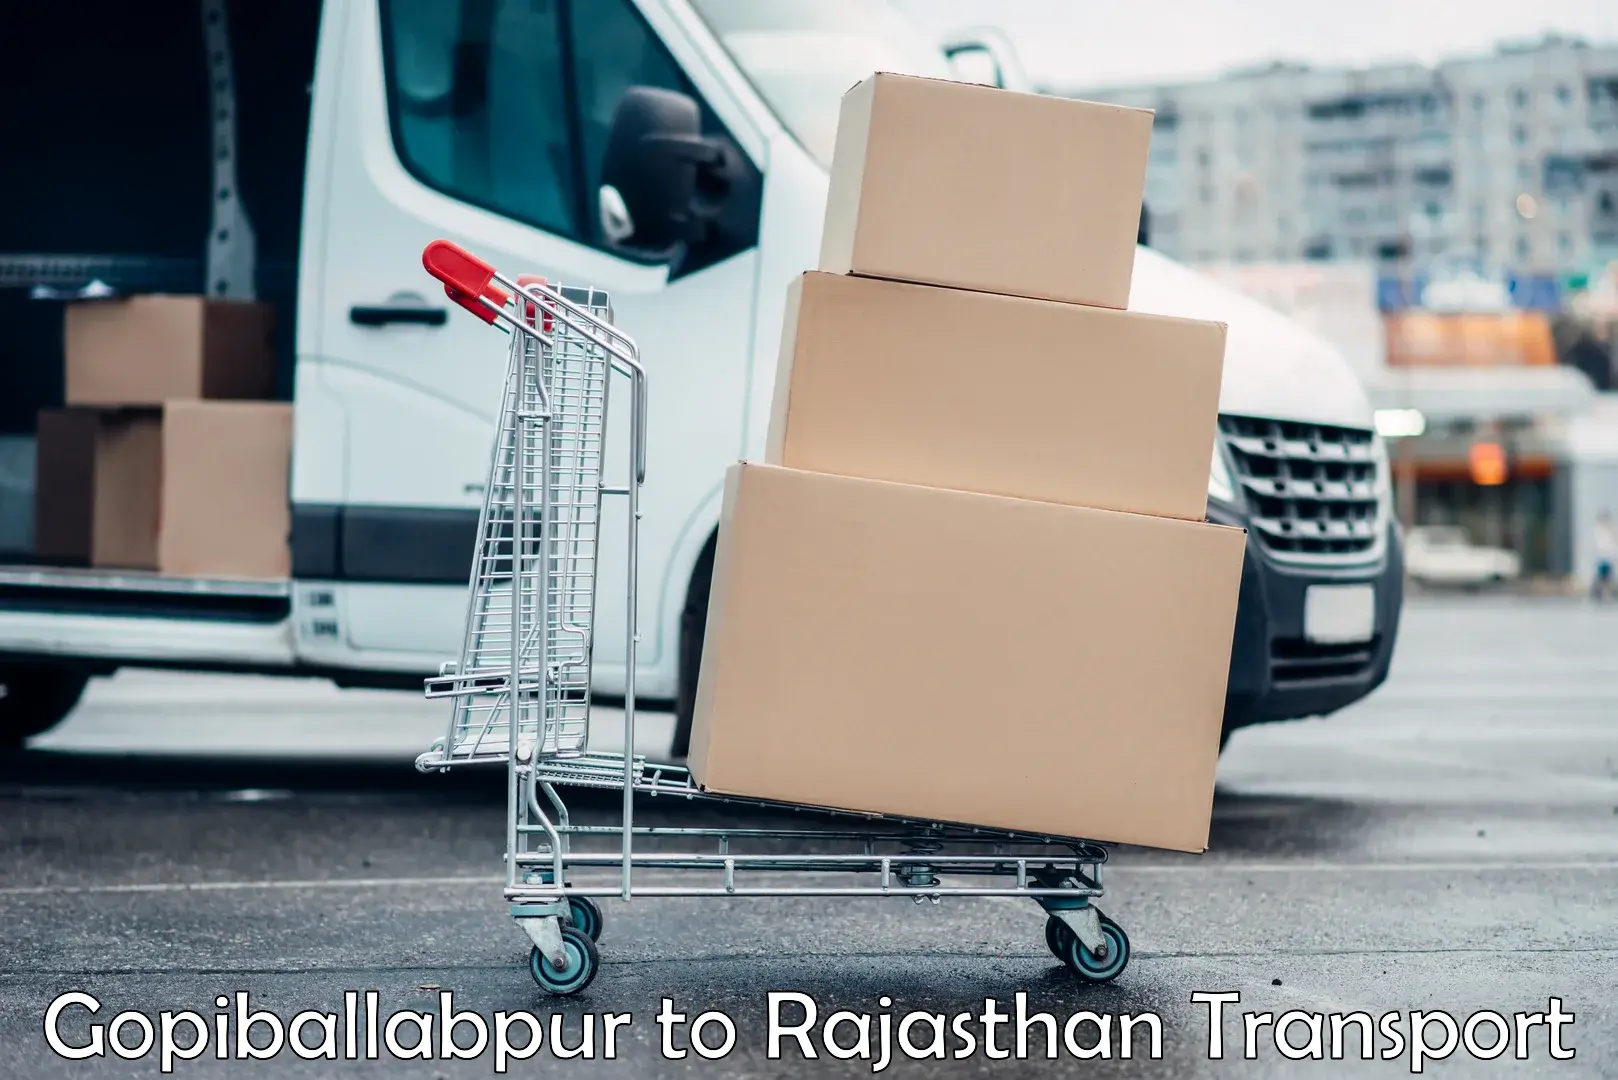 Delivery service Gopiballabpur to Viratnagar